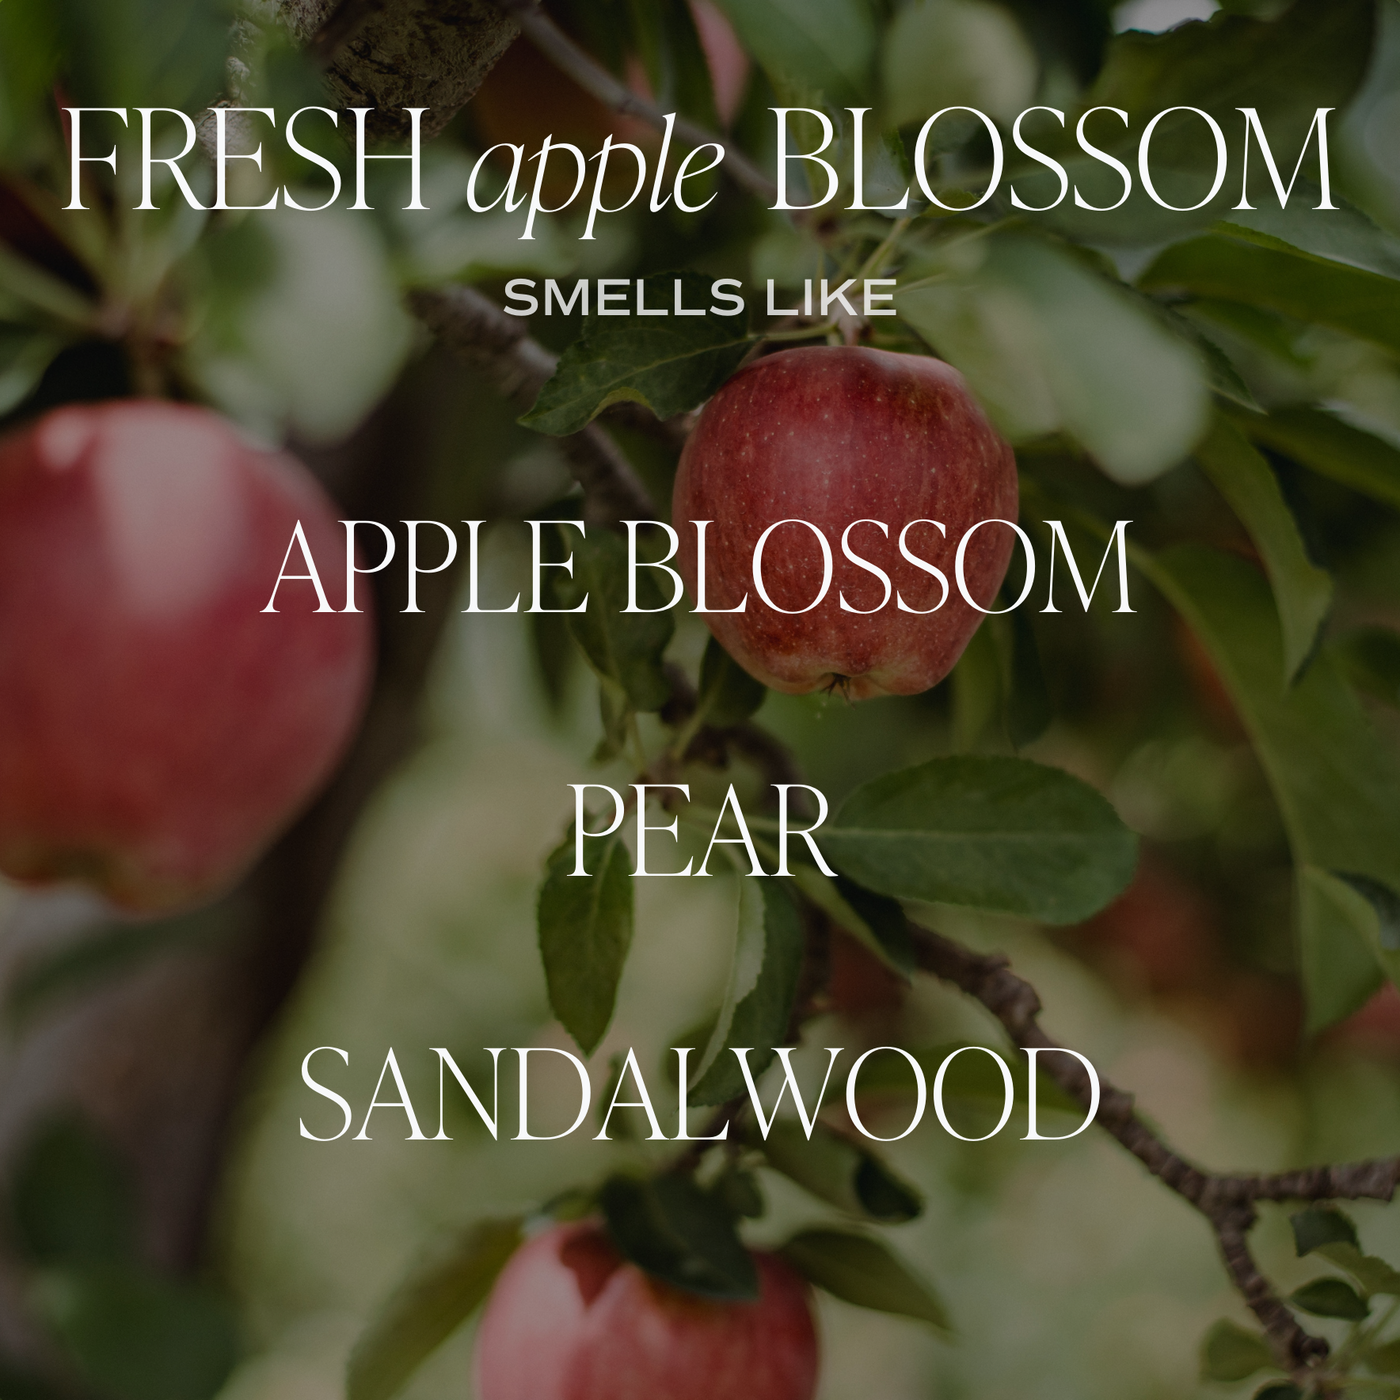 Fresh Apple Blossom Soy Candle - Amber Jar - 11 oz